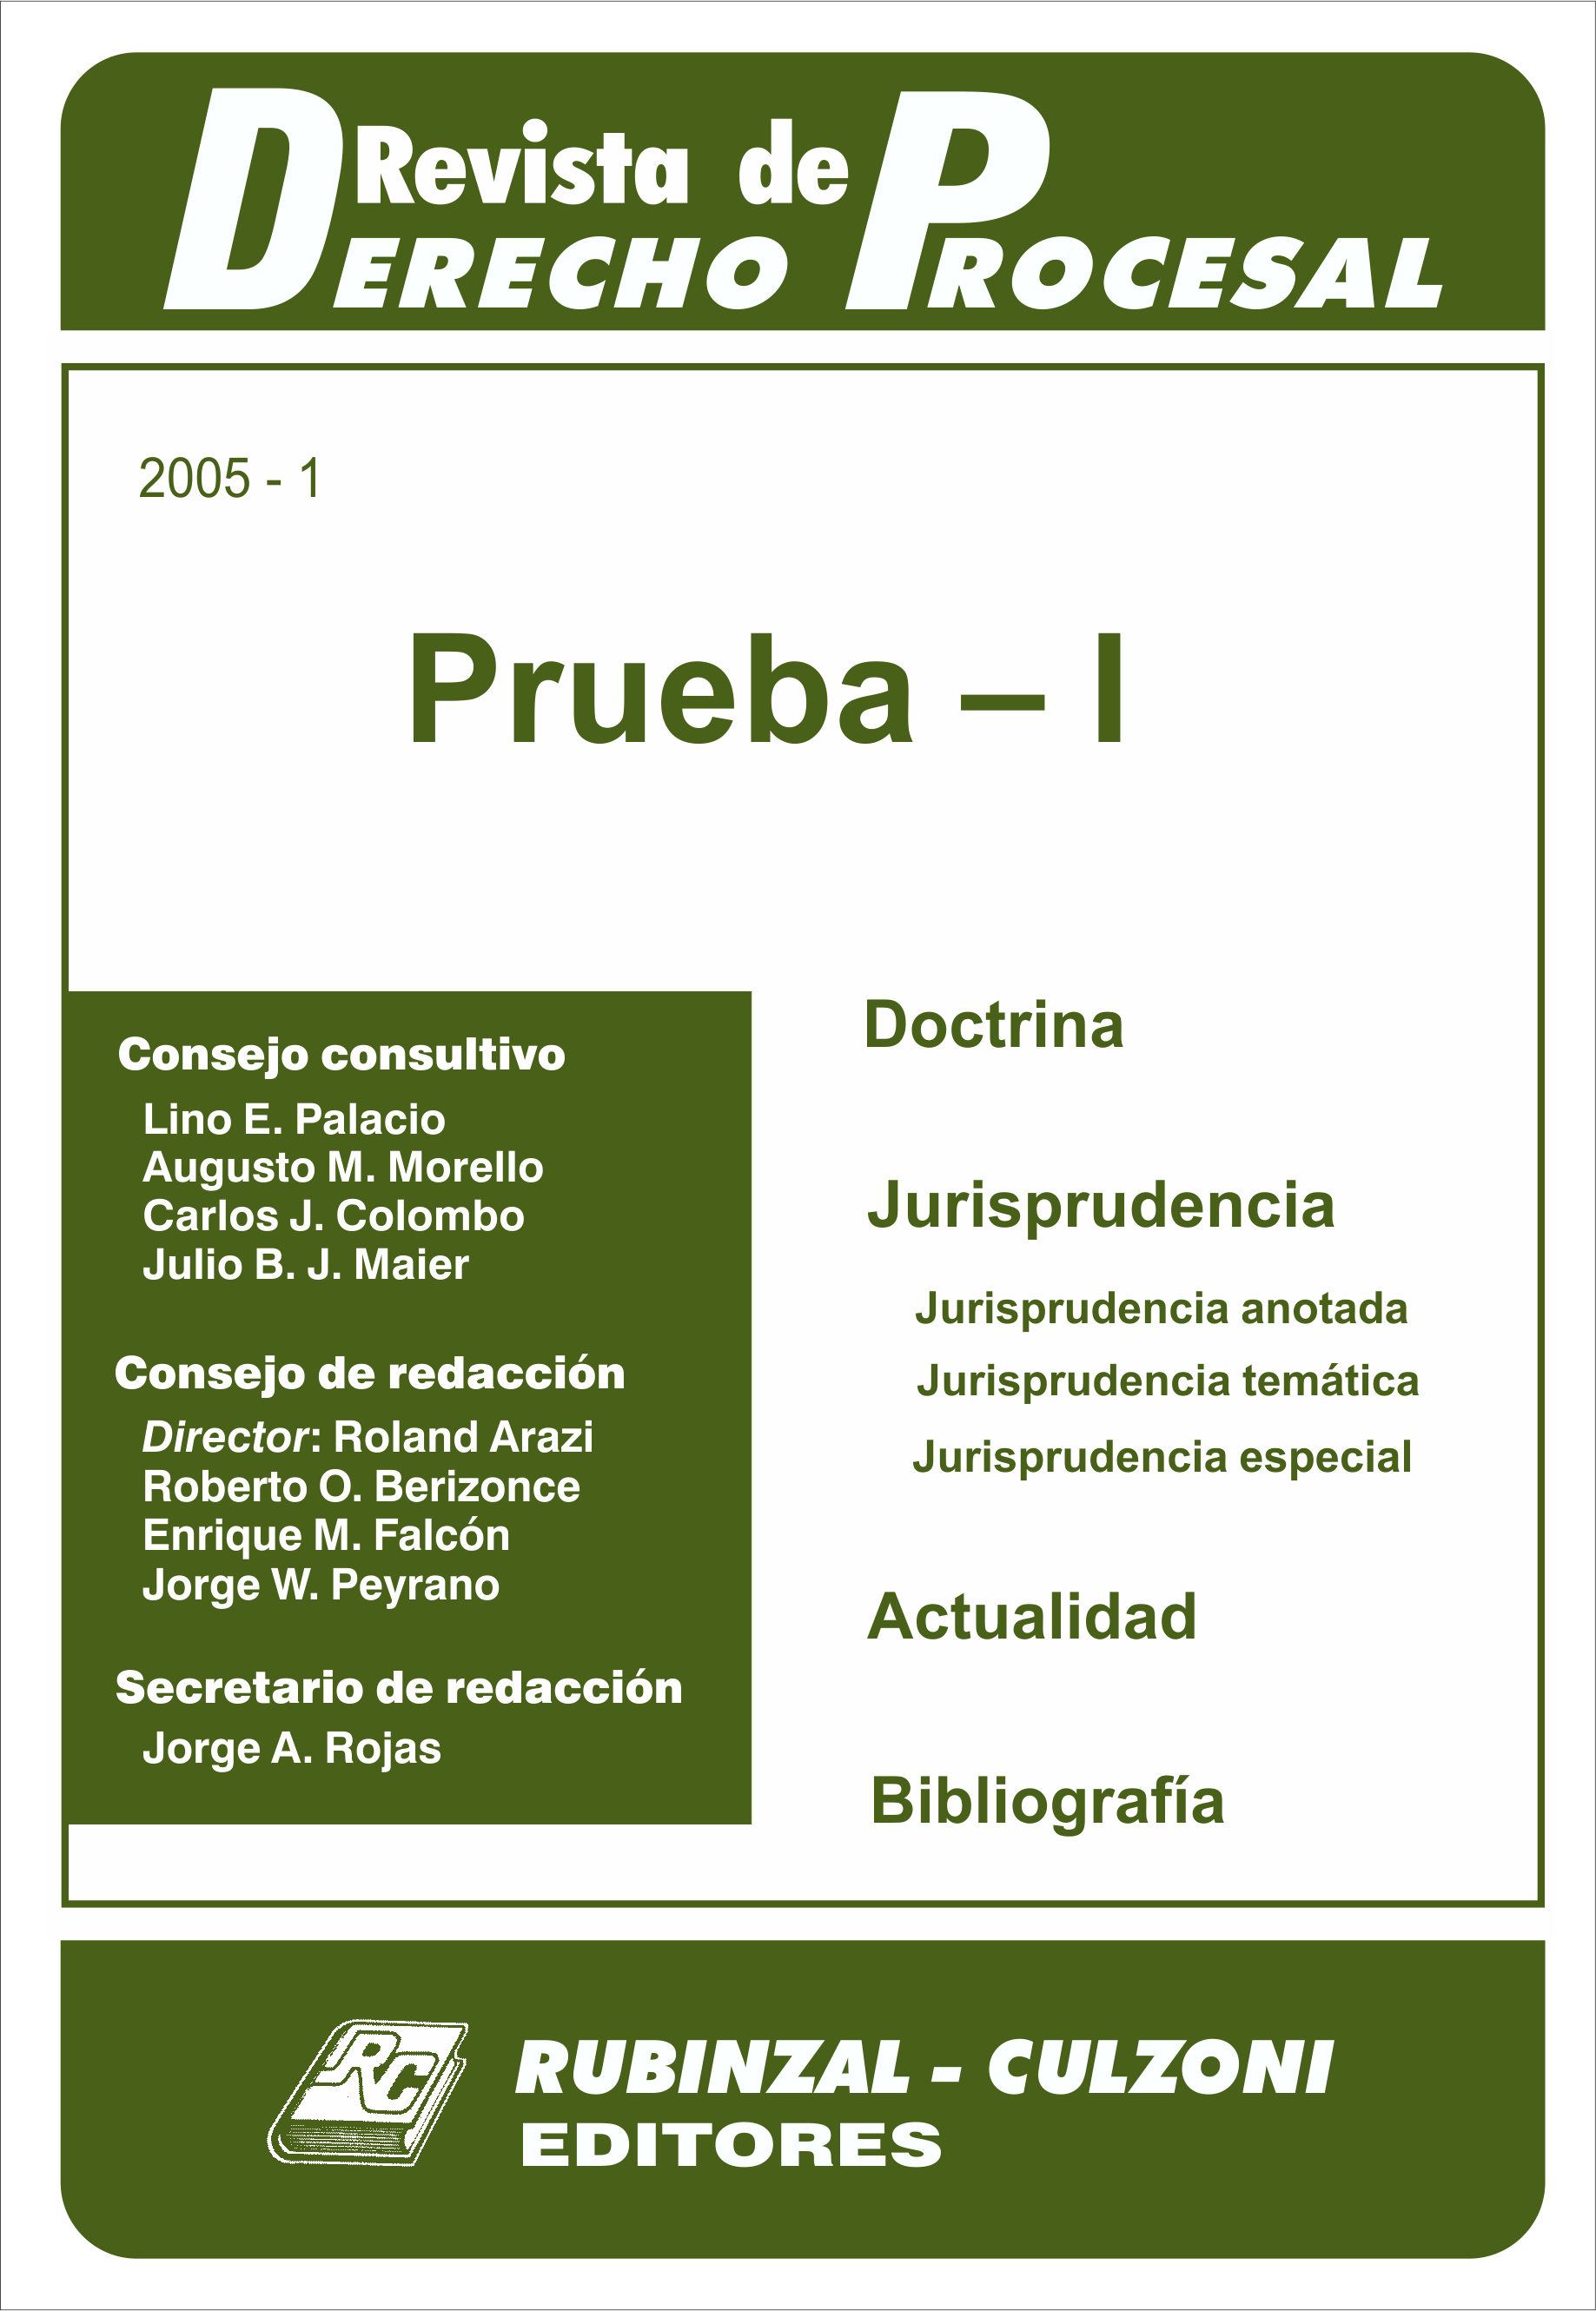 Revista de Derecho Procesal - Prueba - I.